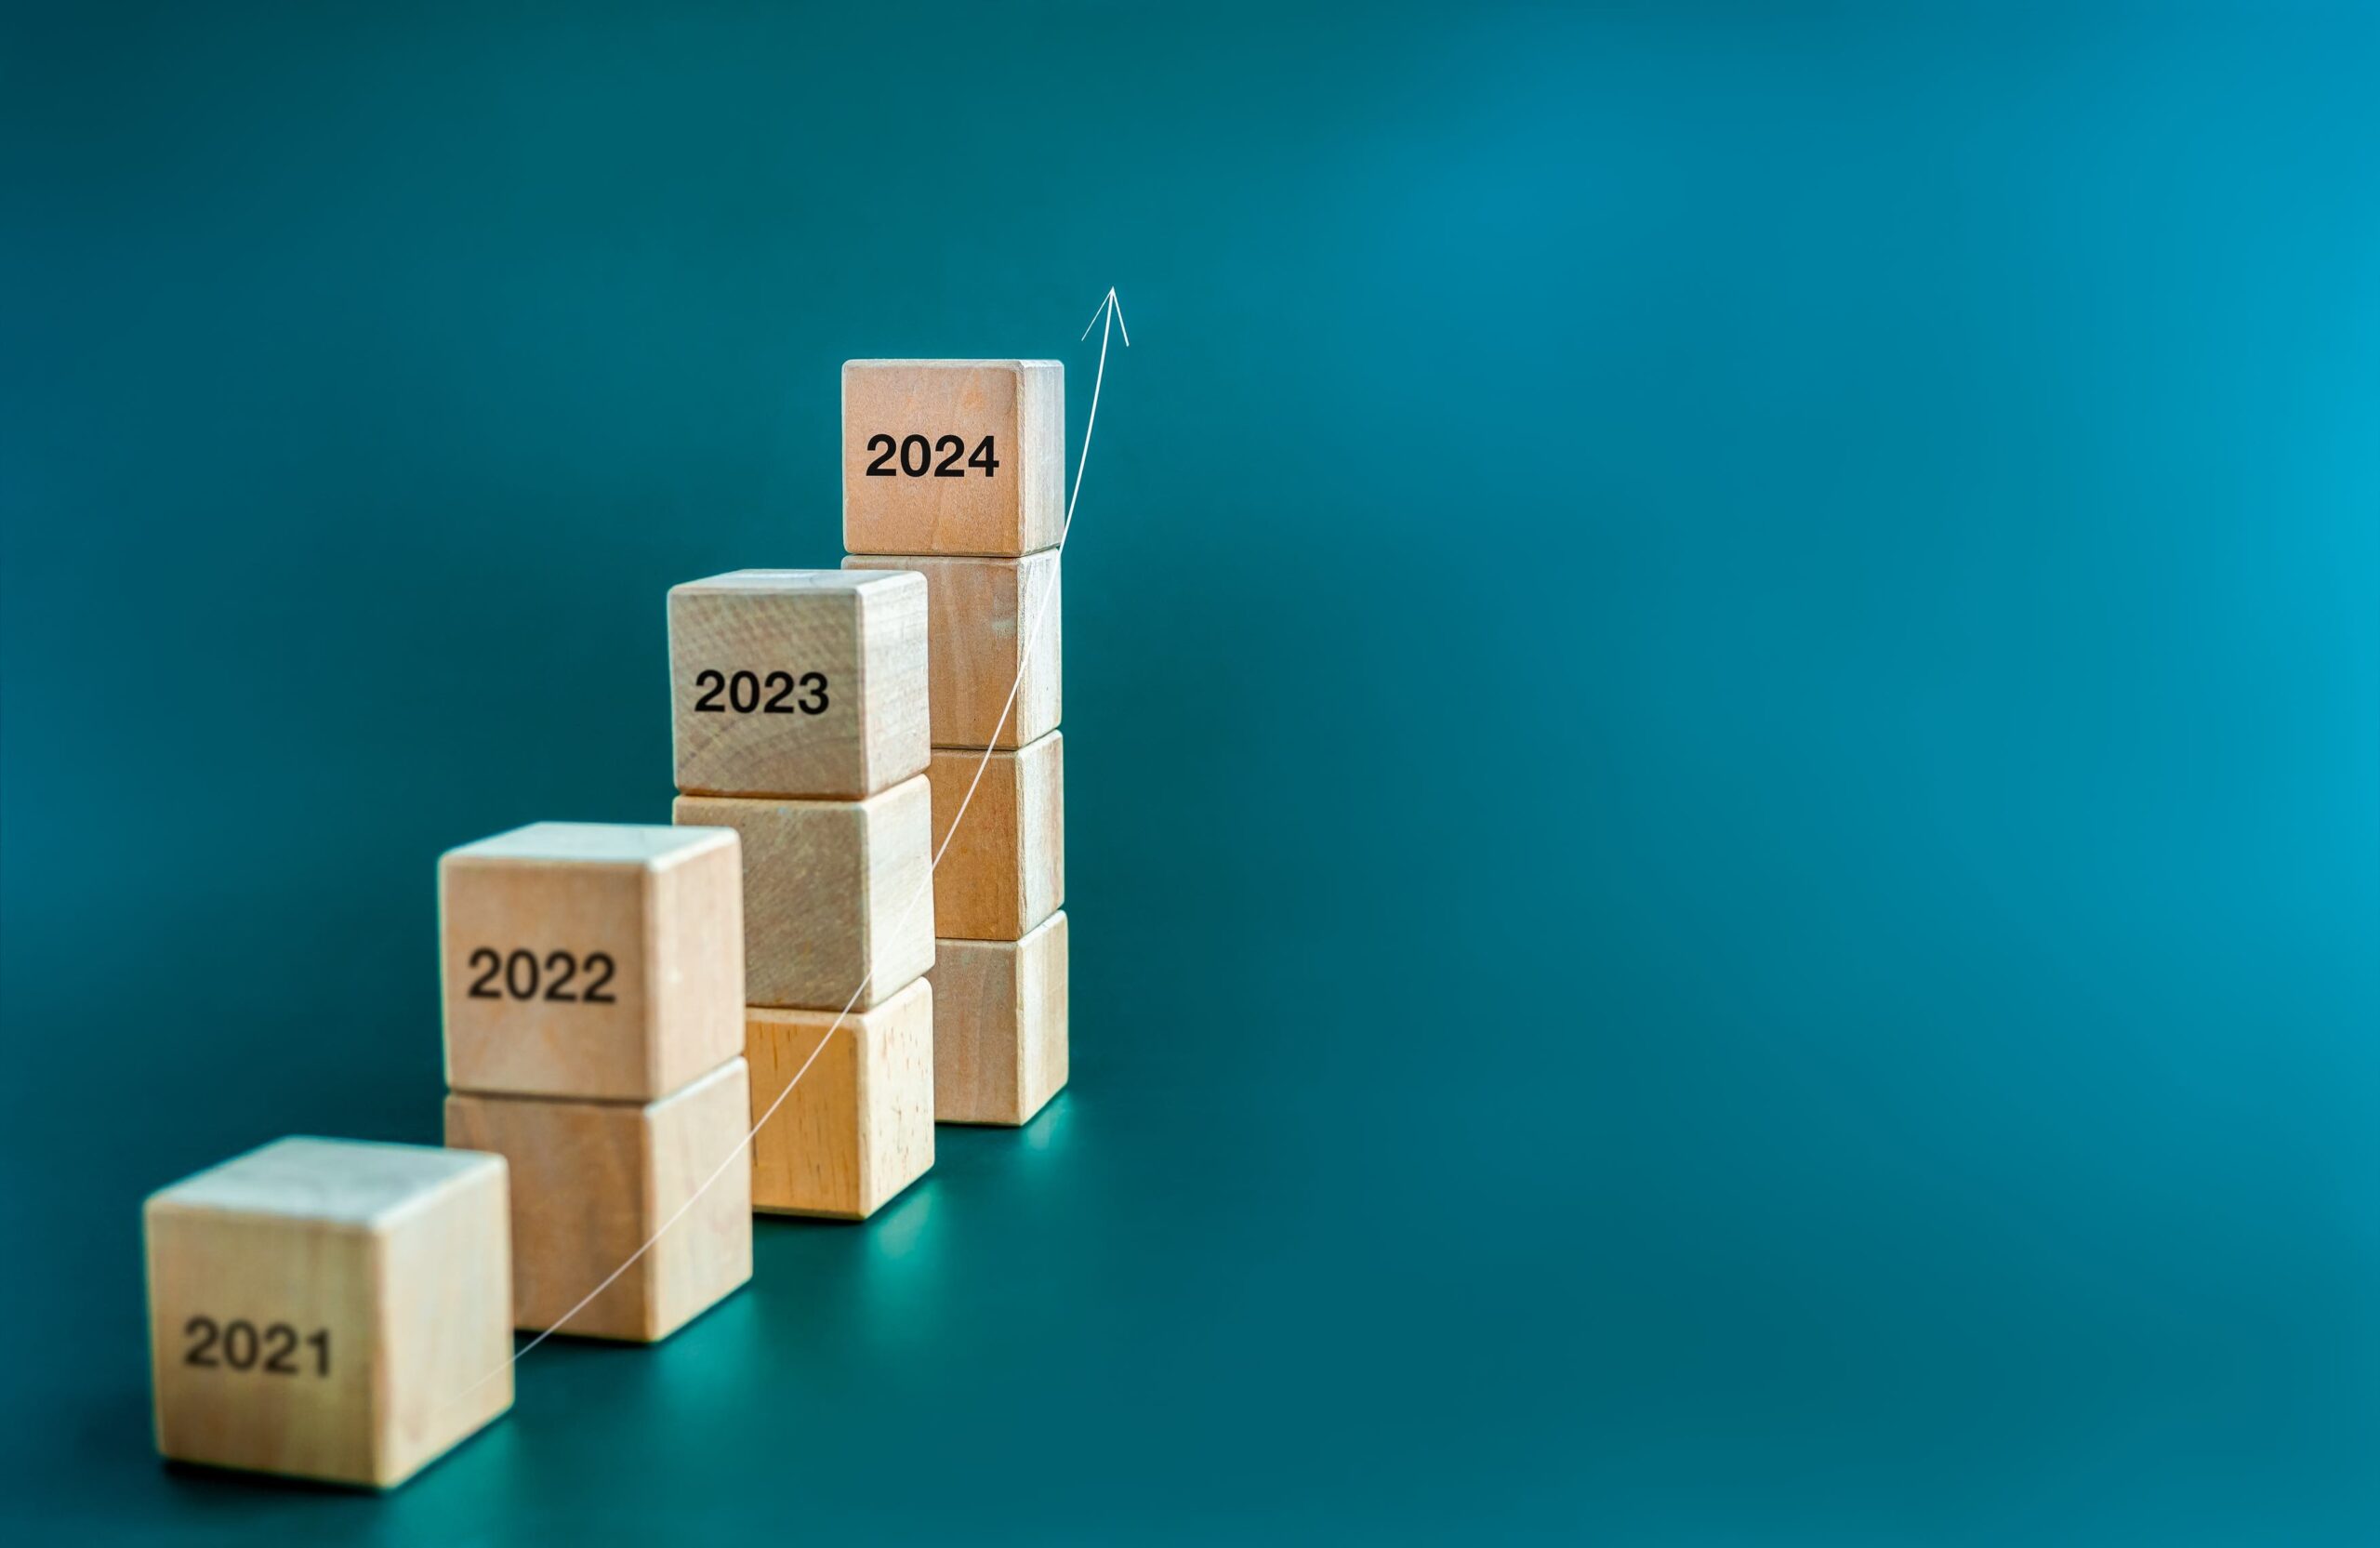 Pequeñas pilas de bloques en altura ascendente con los años 2021-2024 grabados en ellos para indicar el paso del tiempo.